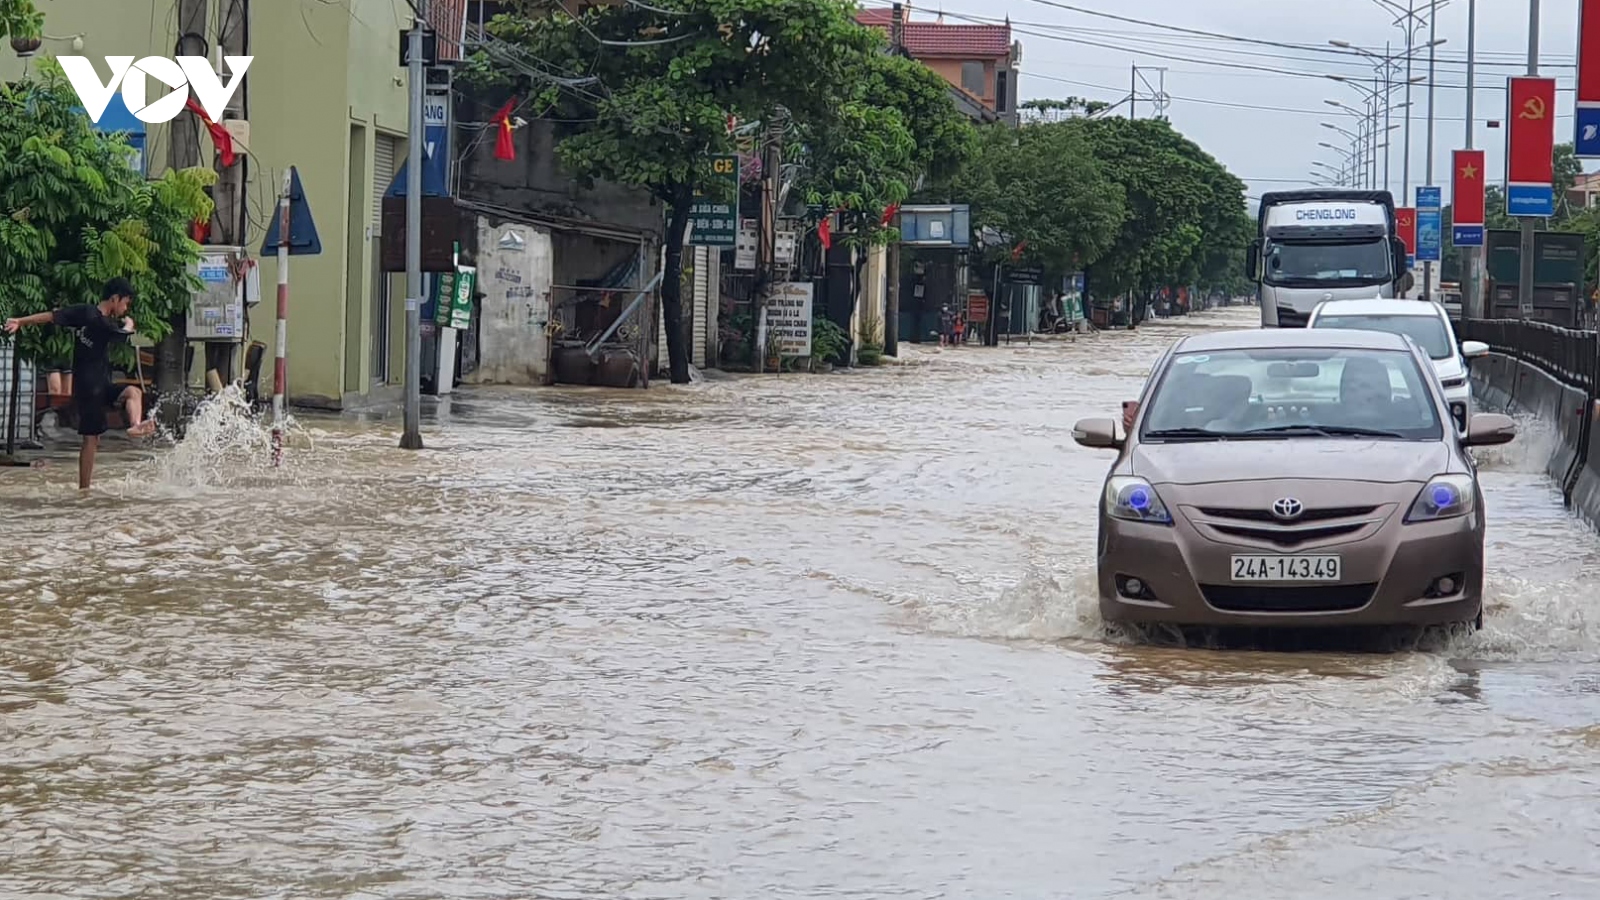 Quốc lộ 1A qua Nghệ An nhiều đoạn ngập sâu vì mưa lũ